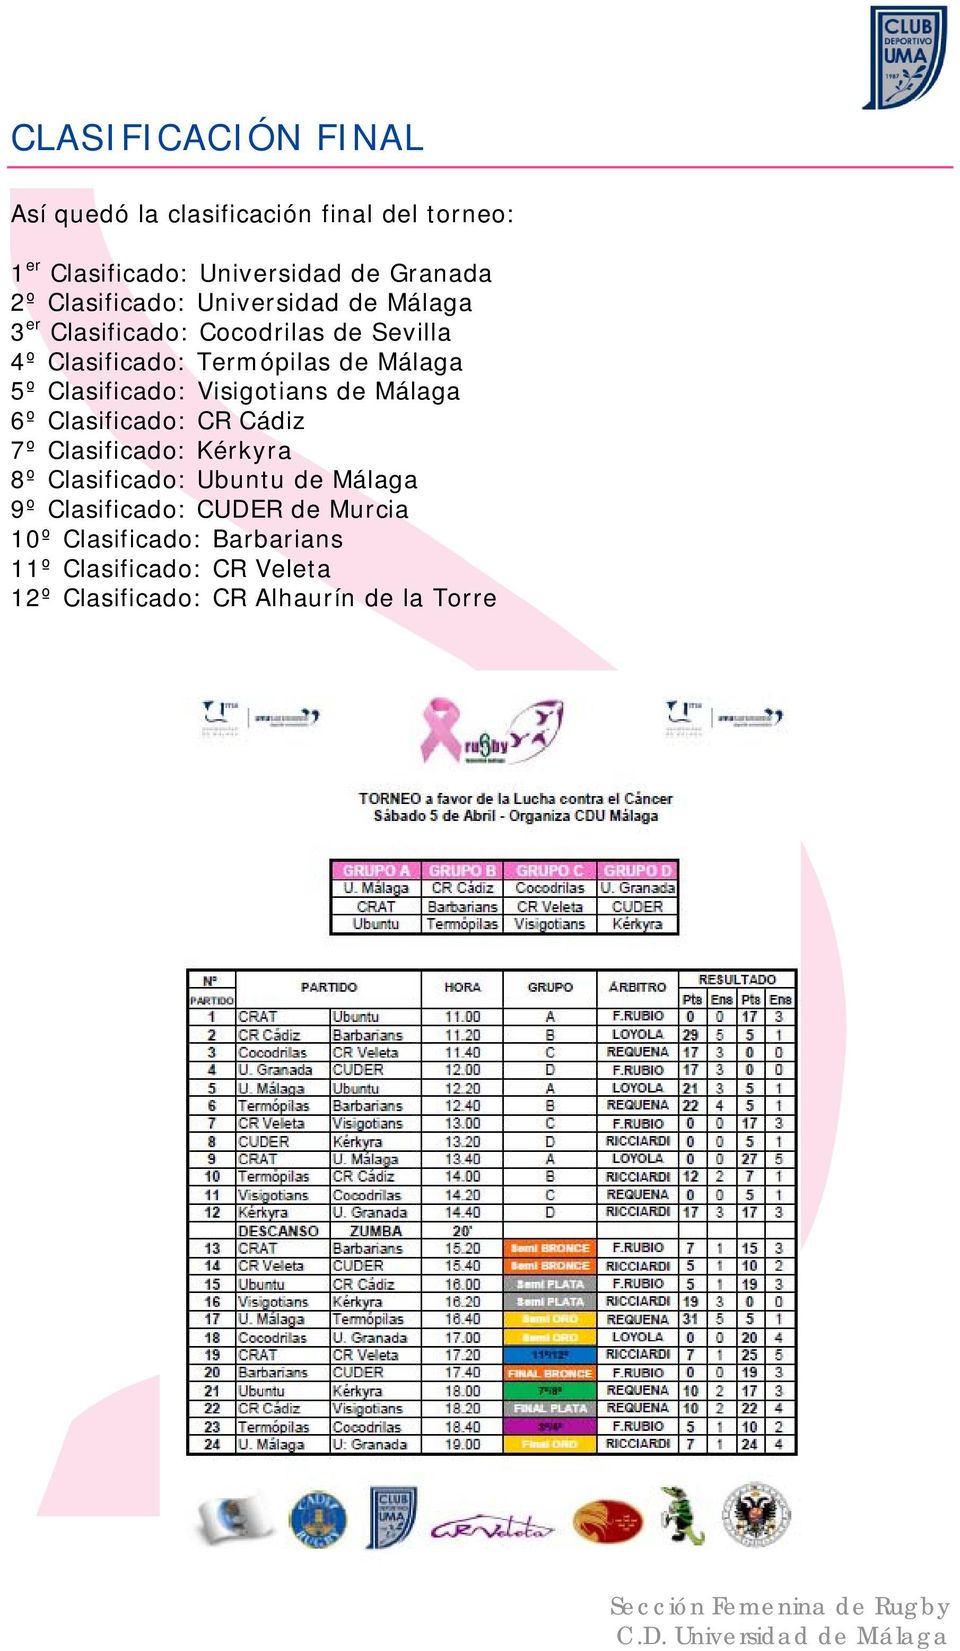 Clasificado: Visigotians de Málaga 6º Clasificado: CR Cádiz 7º Clasificado: Kérkyra 8º Clasificado: Ubuntu de Málaga